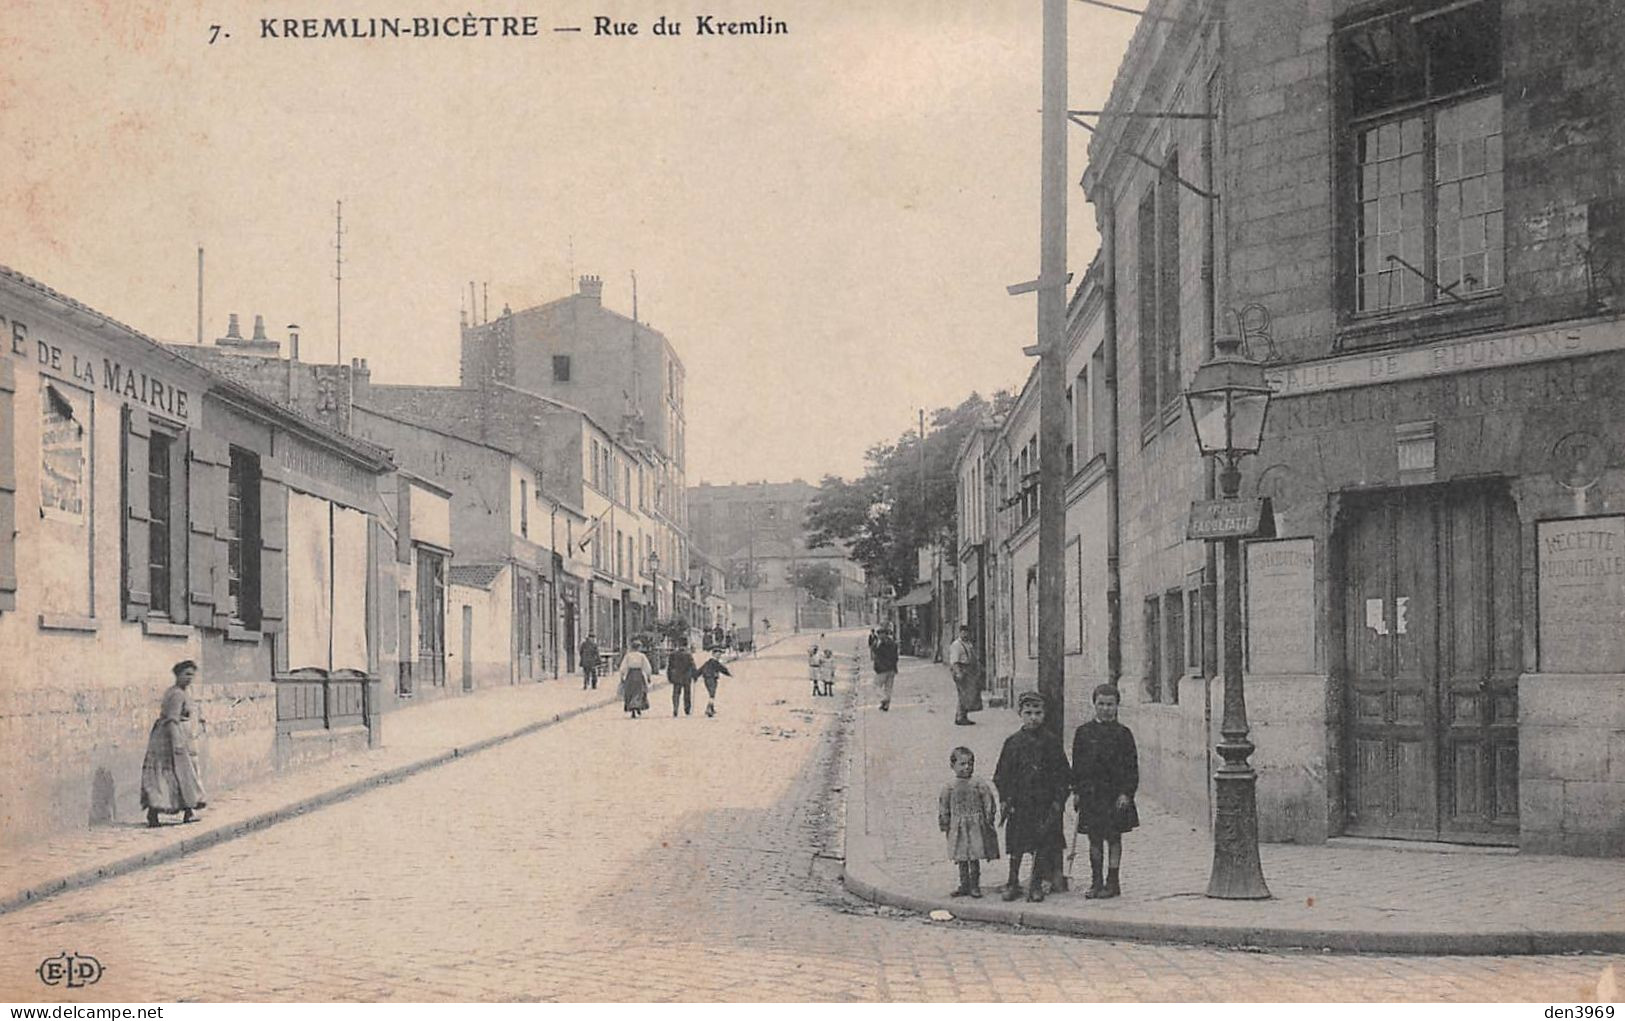 KREMLIN-BICETRE (Val-de-Marne) - Rue Du Kremlin - Buvette De La Mairie - Lampadaire - Ecrit 1919 (2 Scans) - Kremlin Bicetre